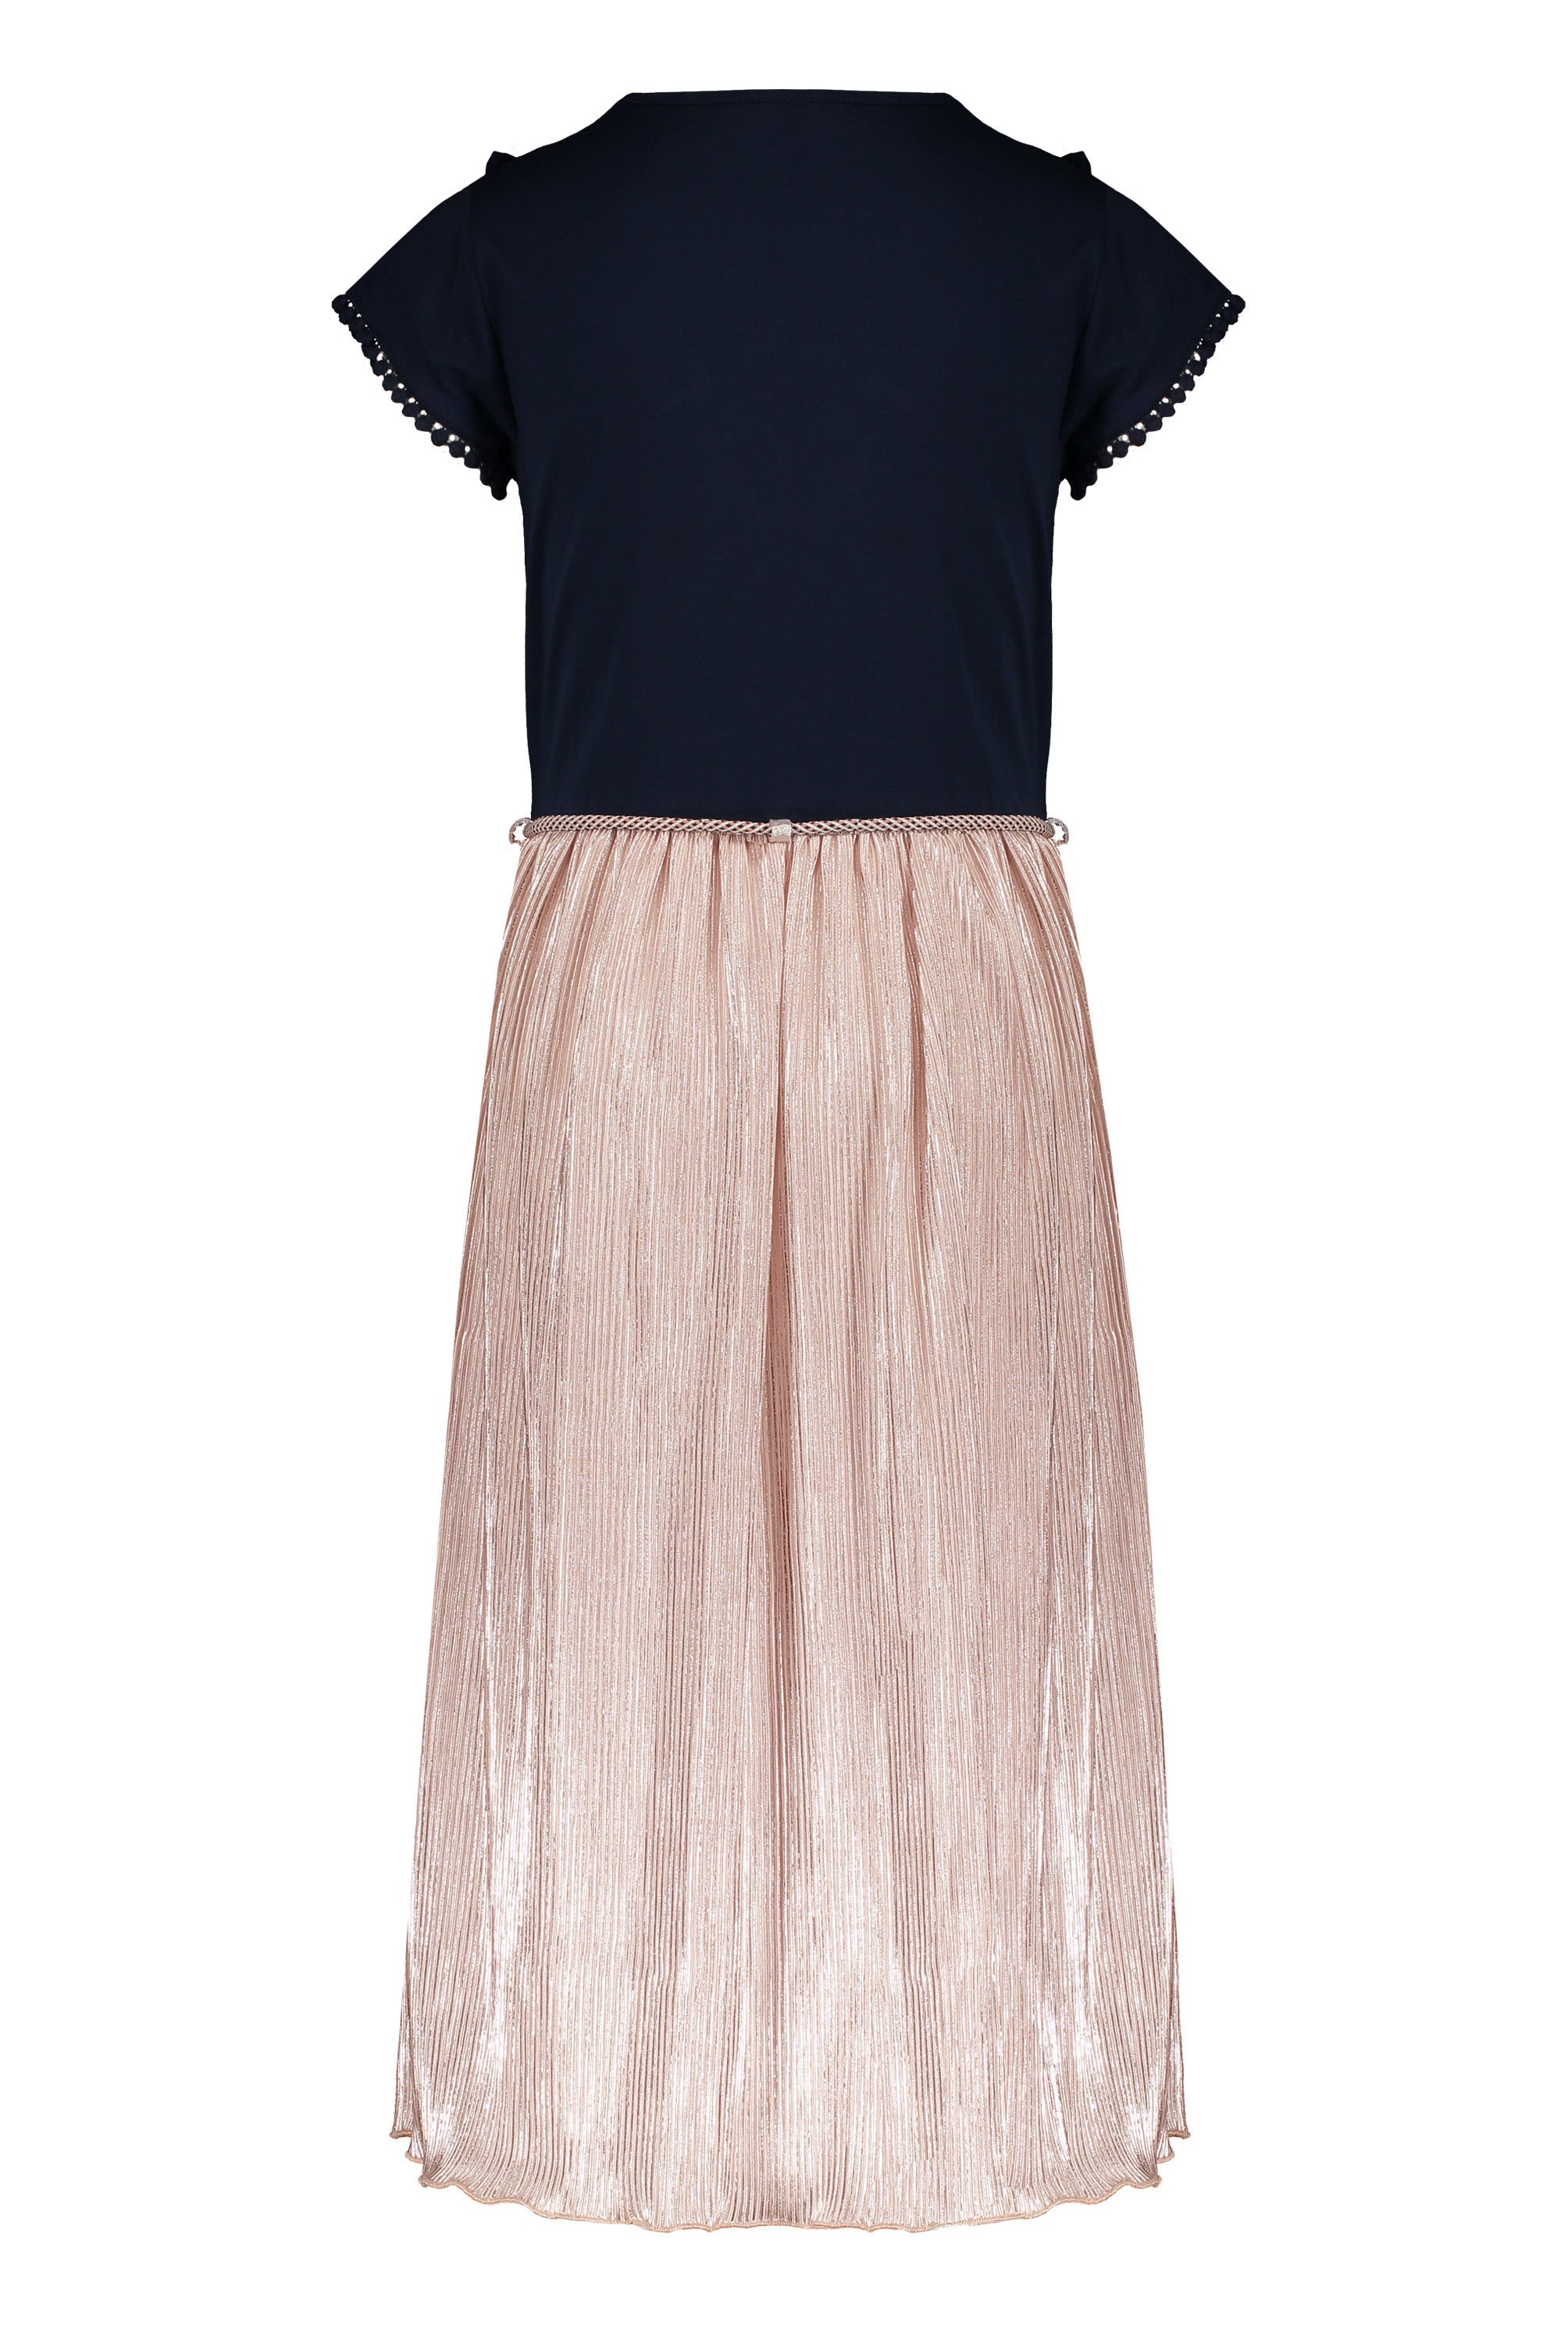 Meisjes Mikado maxi dress with jersey s/sl top+plissee skirt van NoNo in de kleur Rosy Sand in maat 146/152.